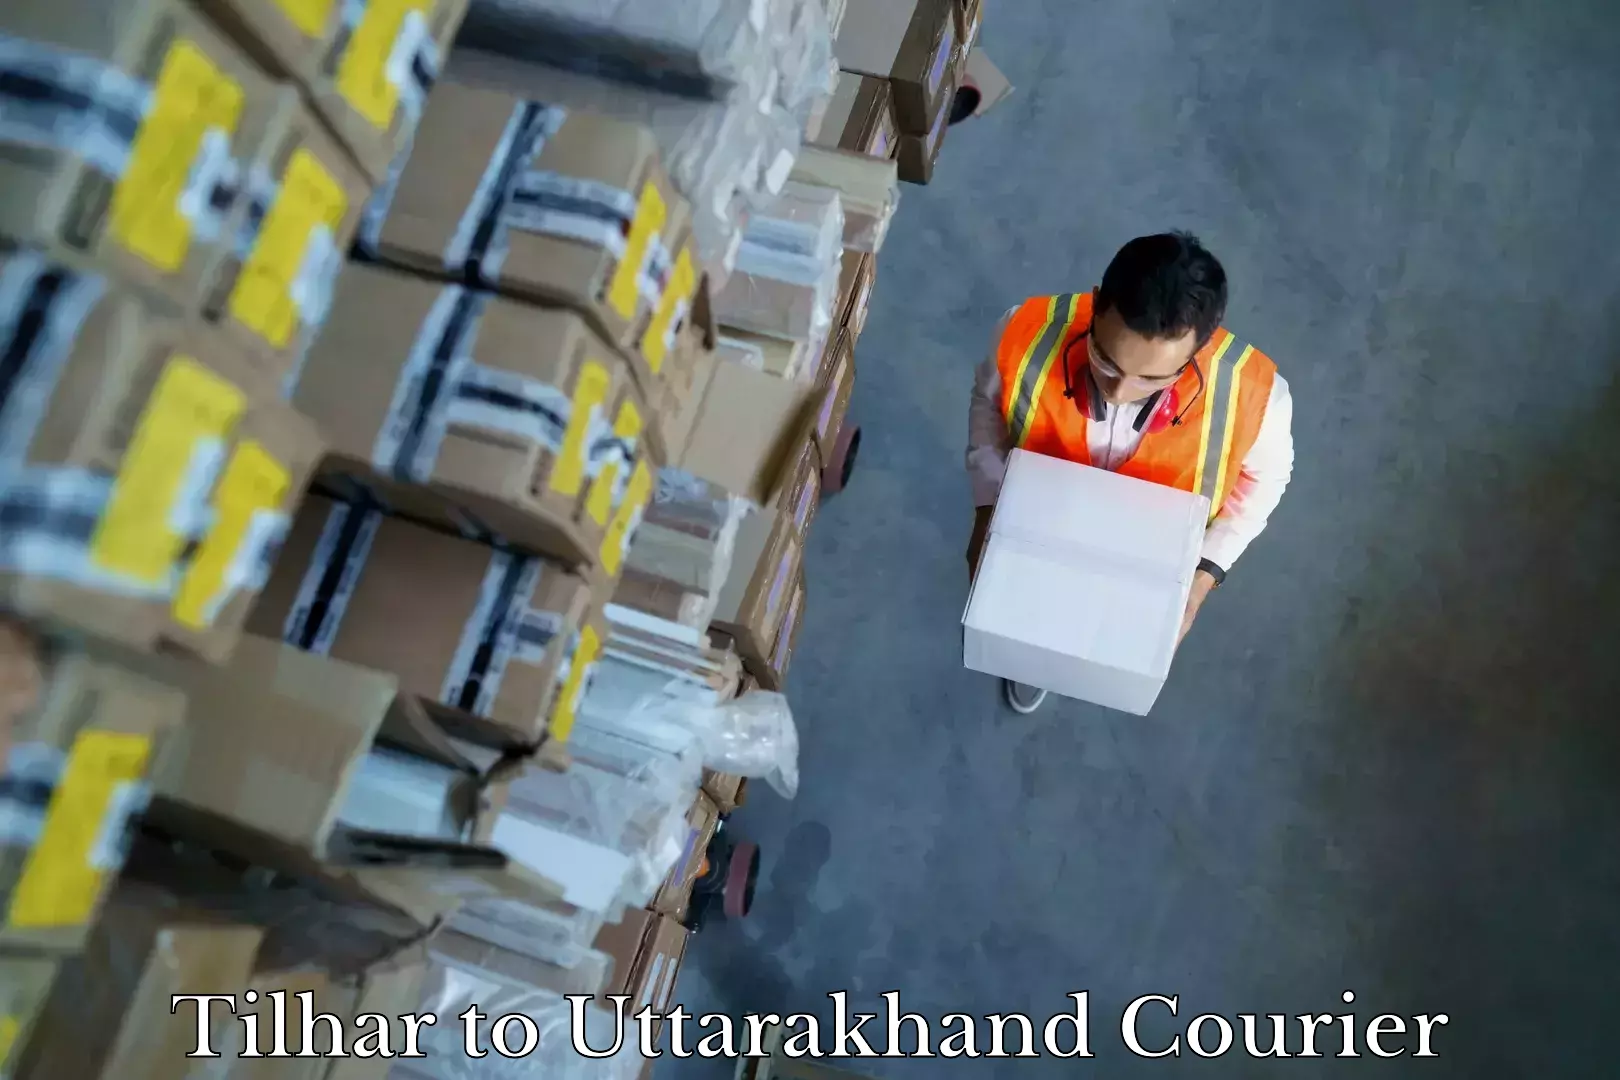 Furniture moving specialists Tilhar to Dwarahat